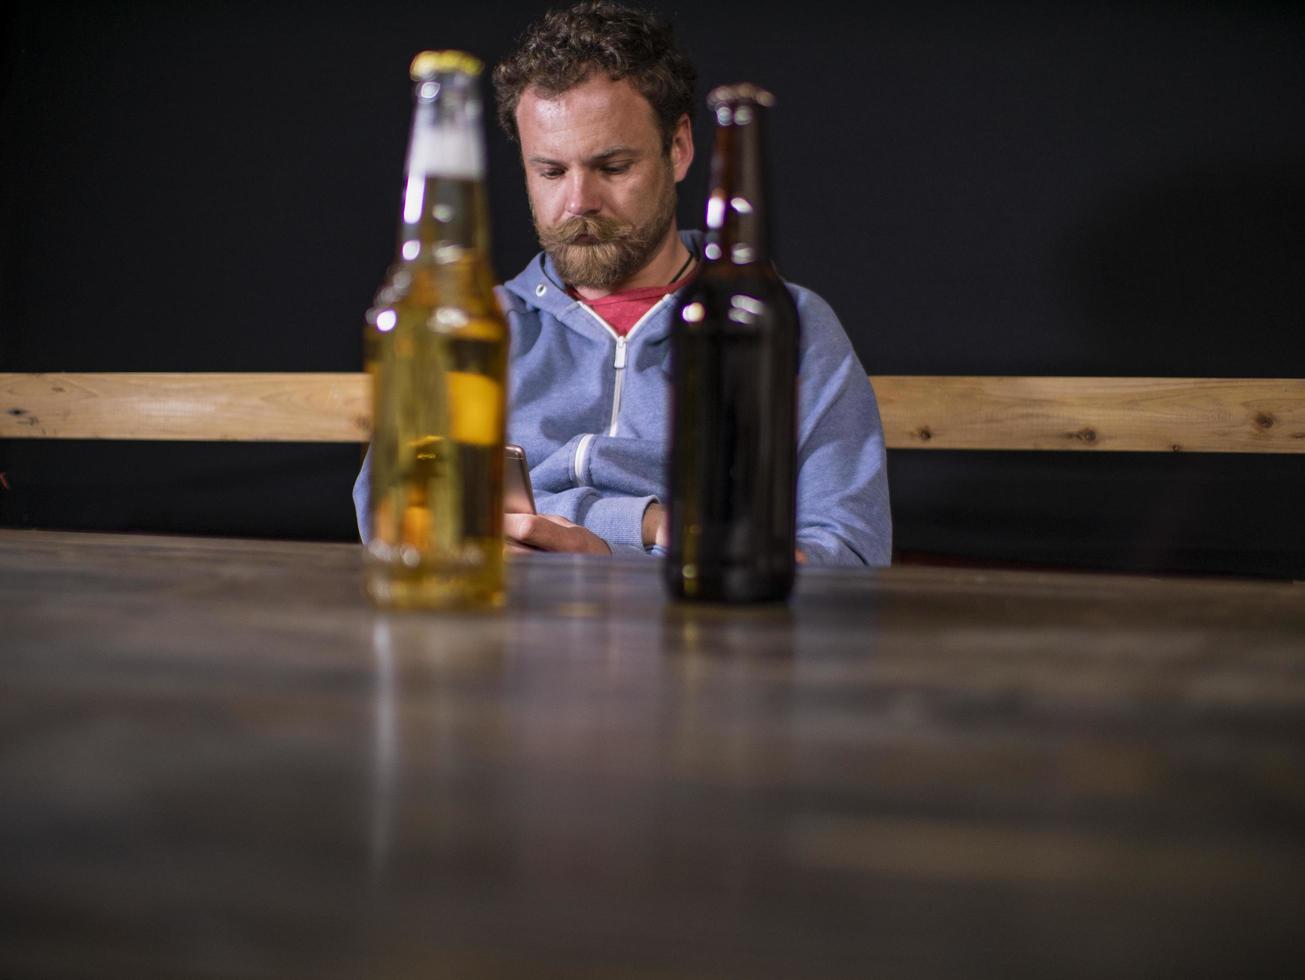 dos botellas de cerveza están de pie sobre la mesa foto